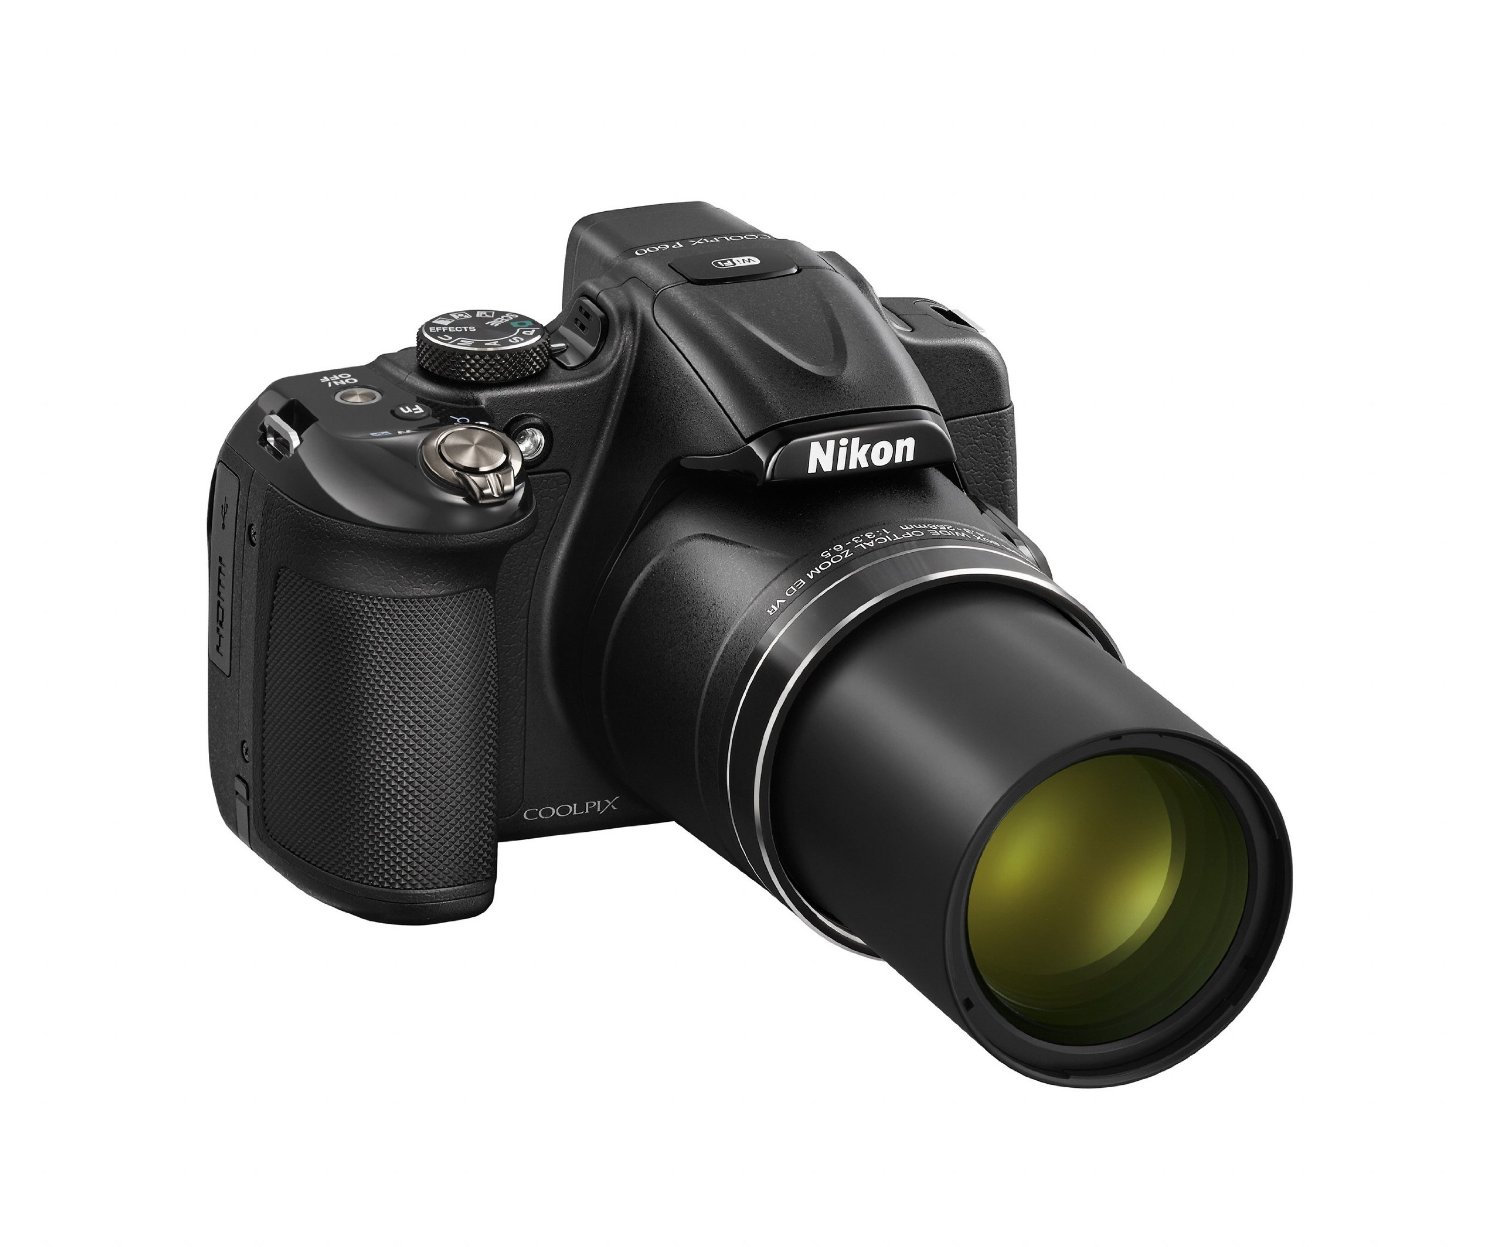 Nikon Coolpix P600 Digitalkamera Test | Spiegelreflexkamera Test 2020